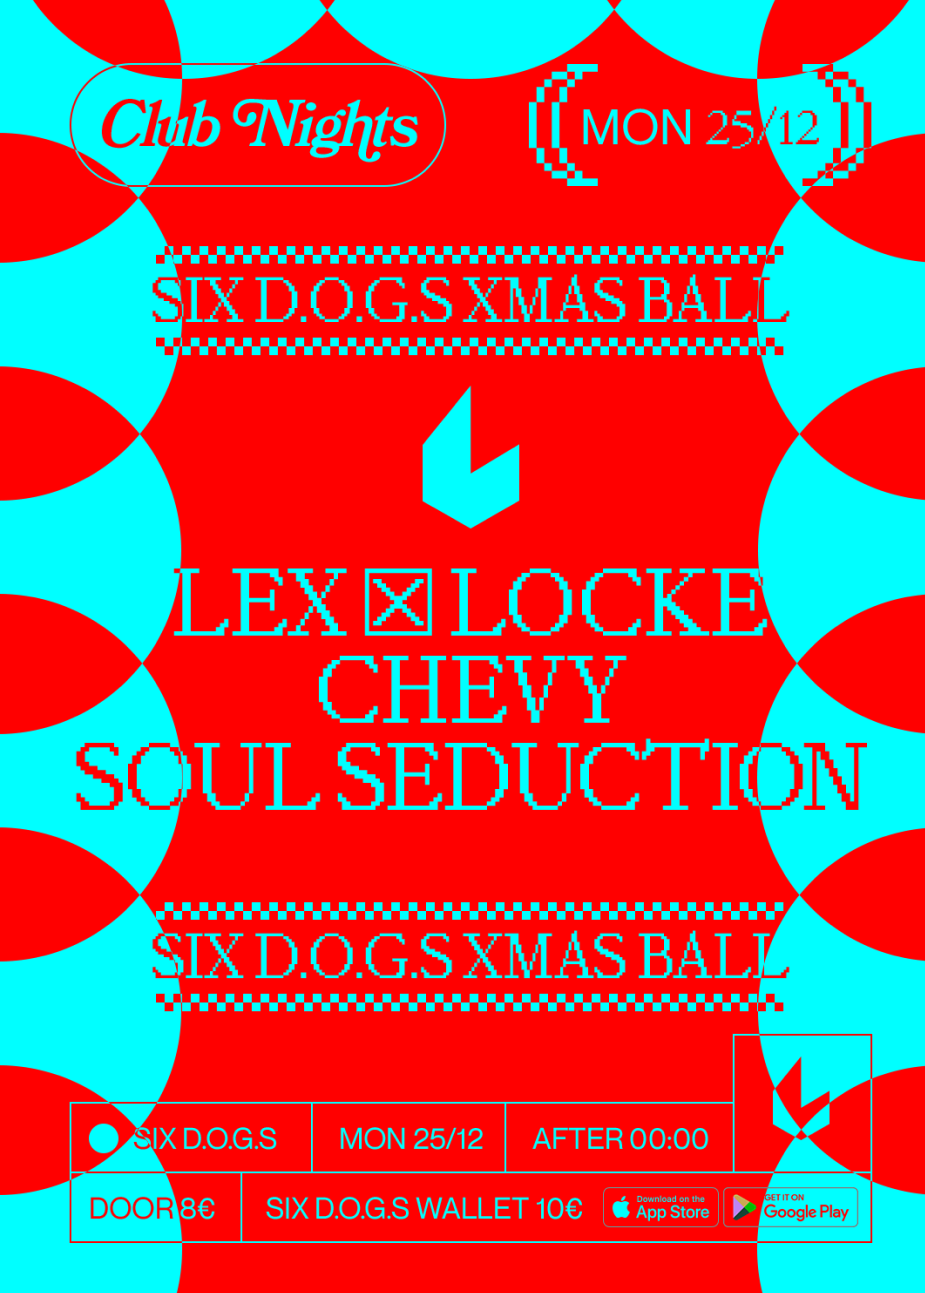 SIX D.O.G.S XMAS BALL: LEX & Locke · Chevy · SOUL SEDUCTION - フライヤー表